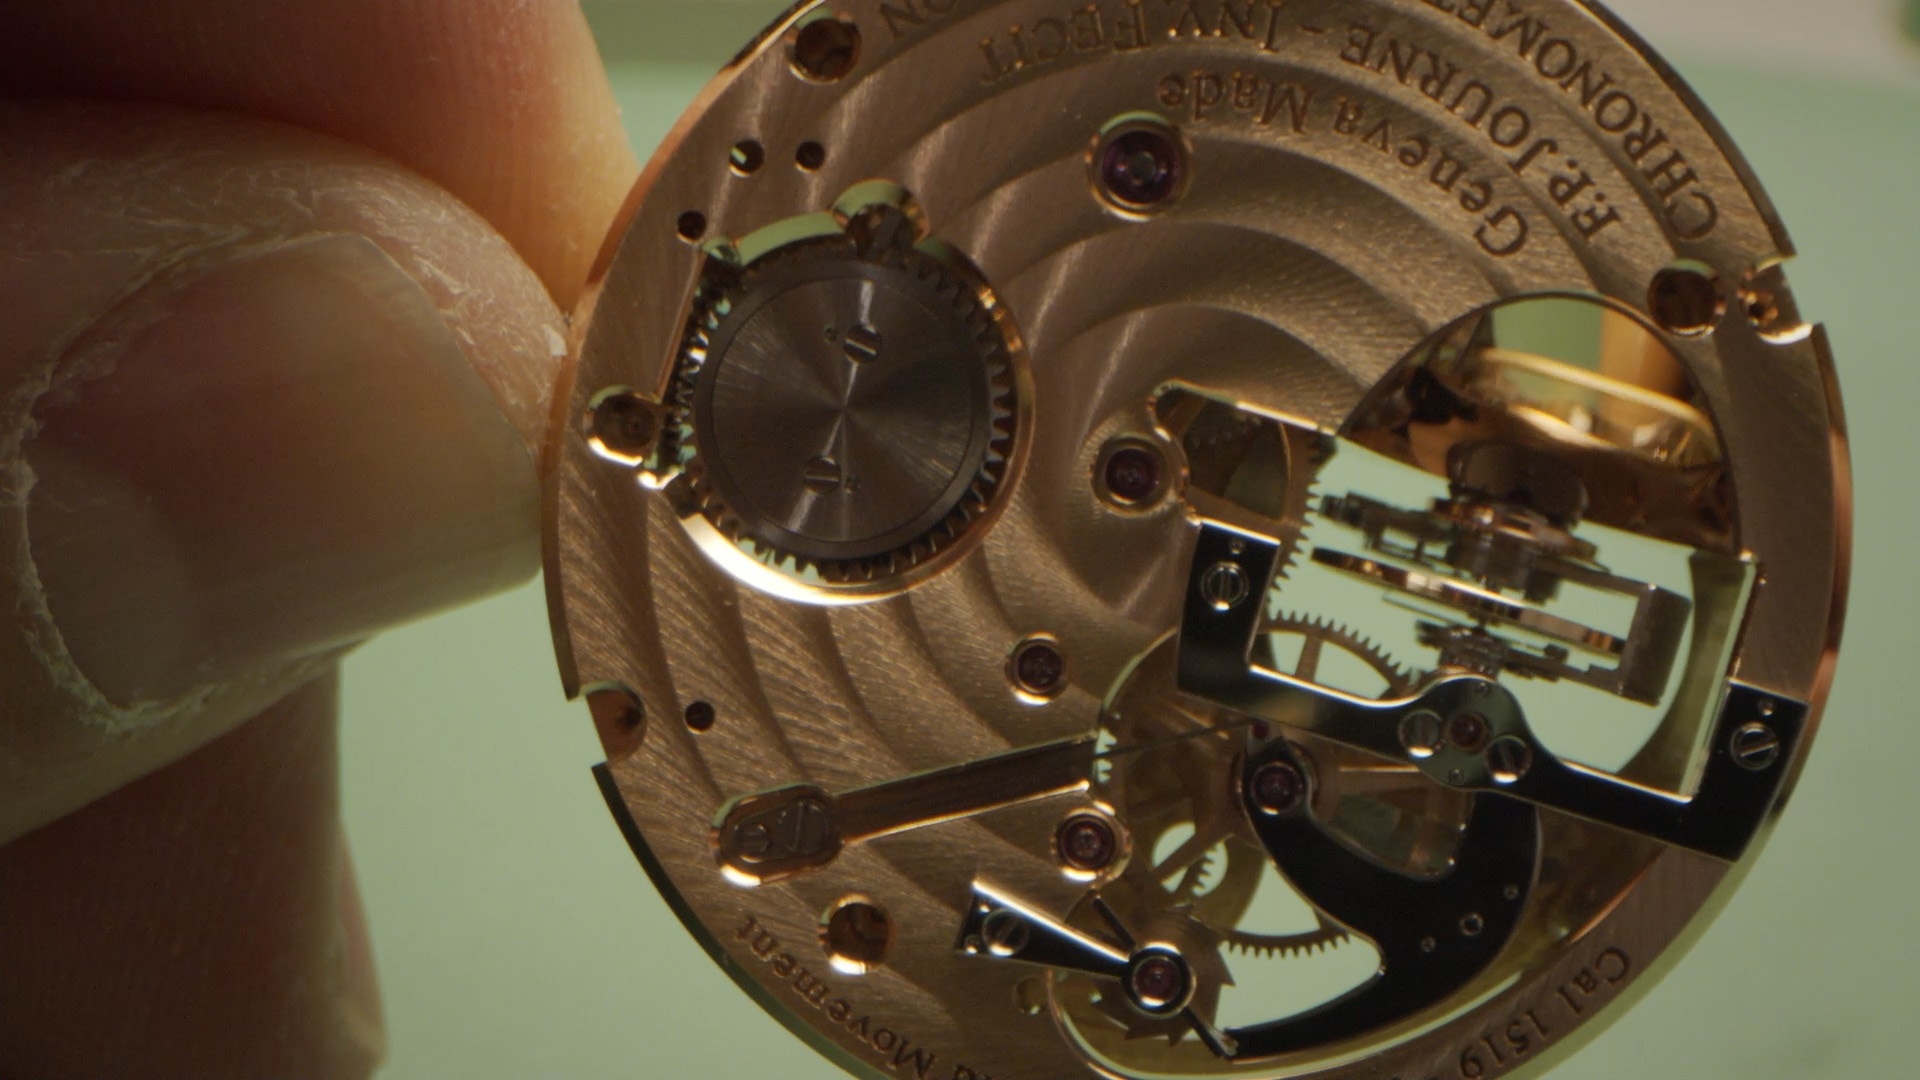 The exquisite 18k gold movement of F.P. Journe’s Tourbillon Souverain wristwatch.